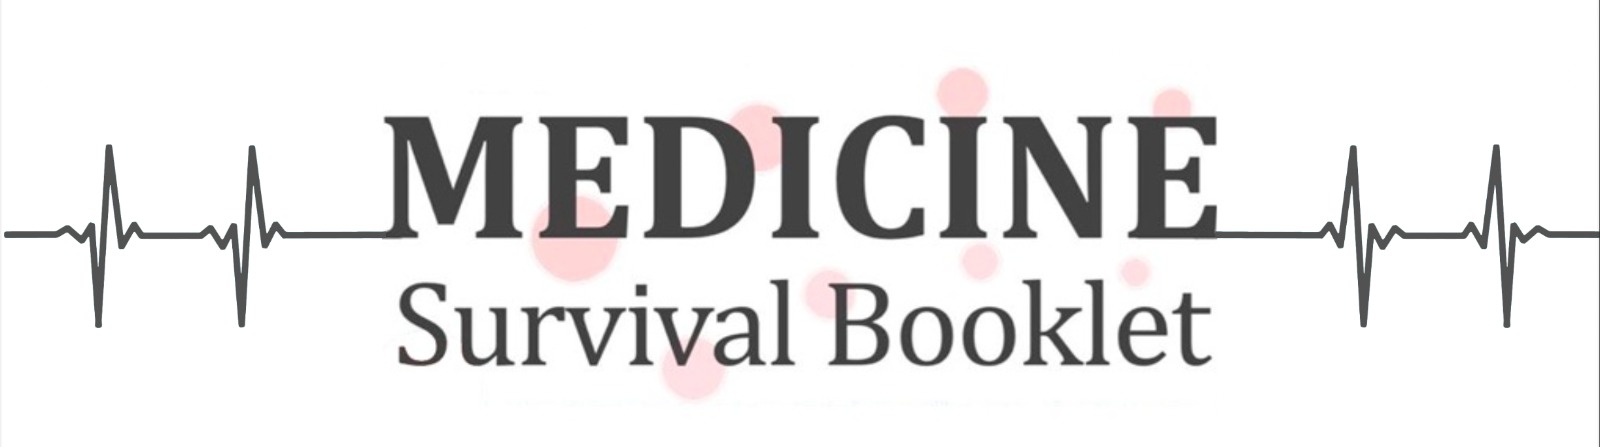 medicine-survival-booklet